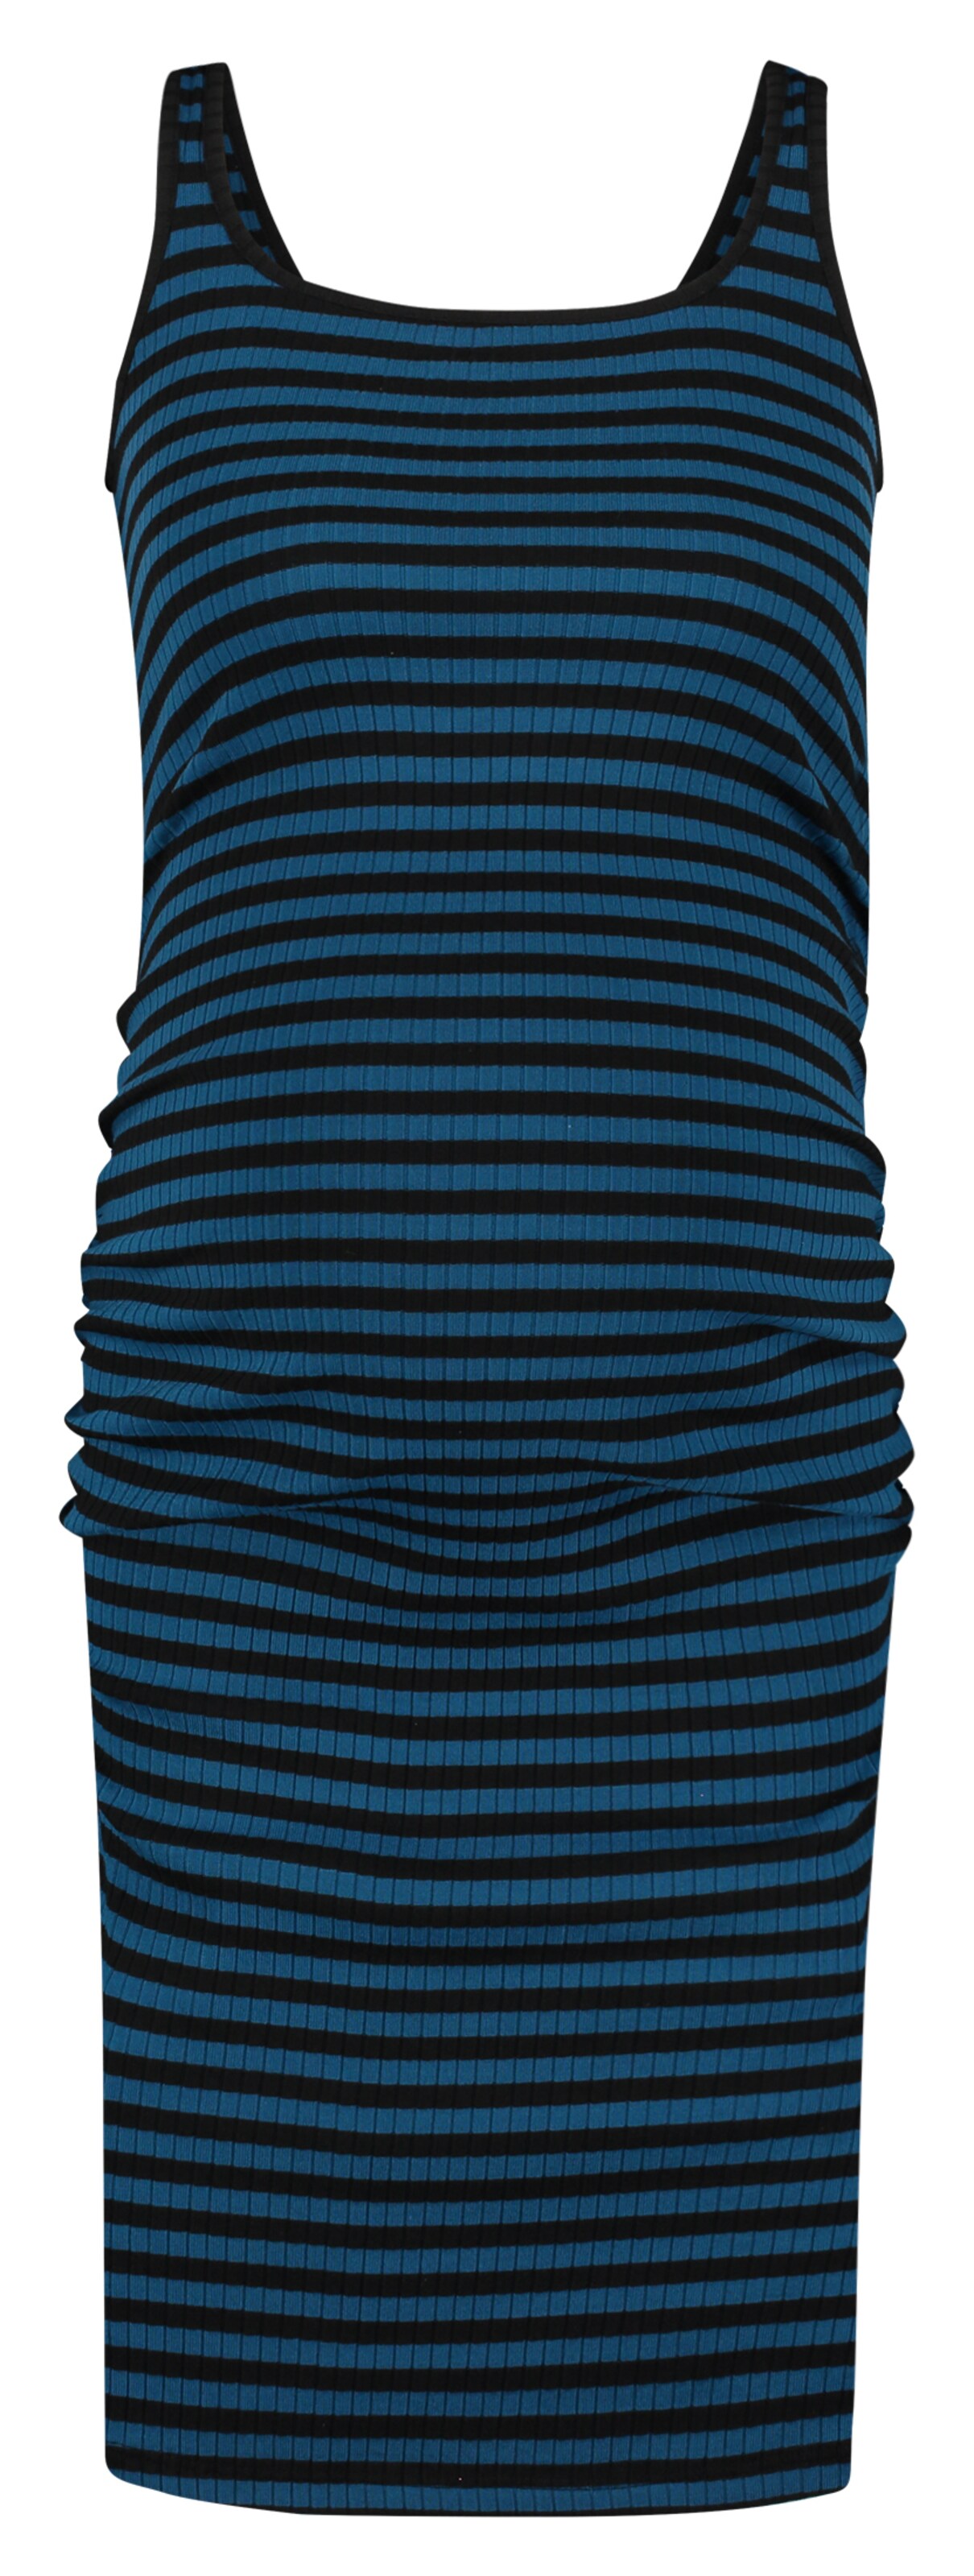 Supermom Kleid Stripe in Schwarz, Blau 